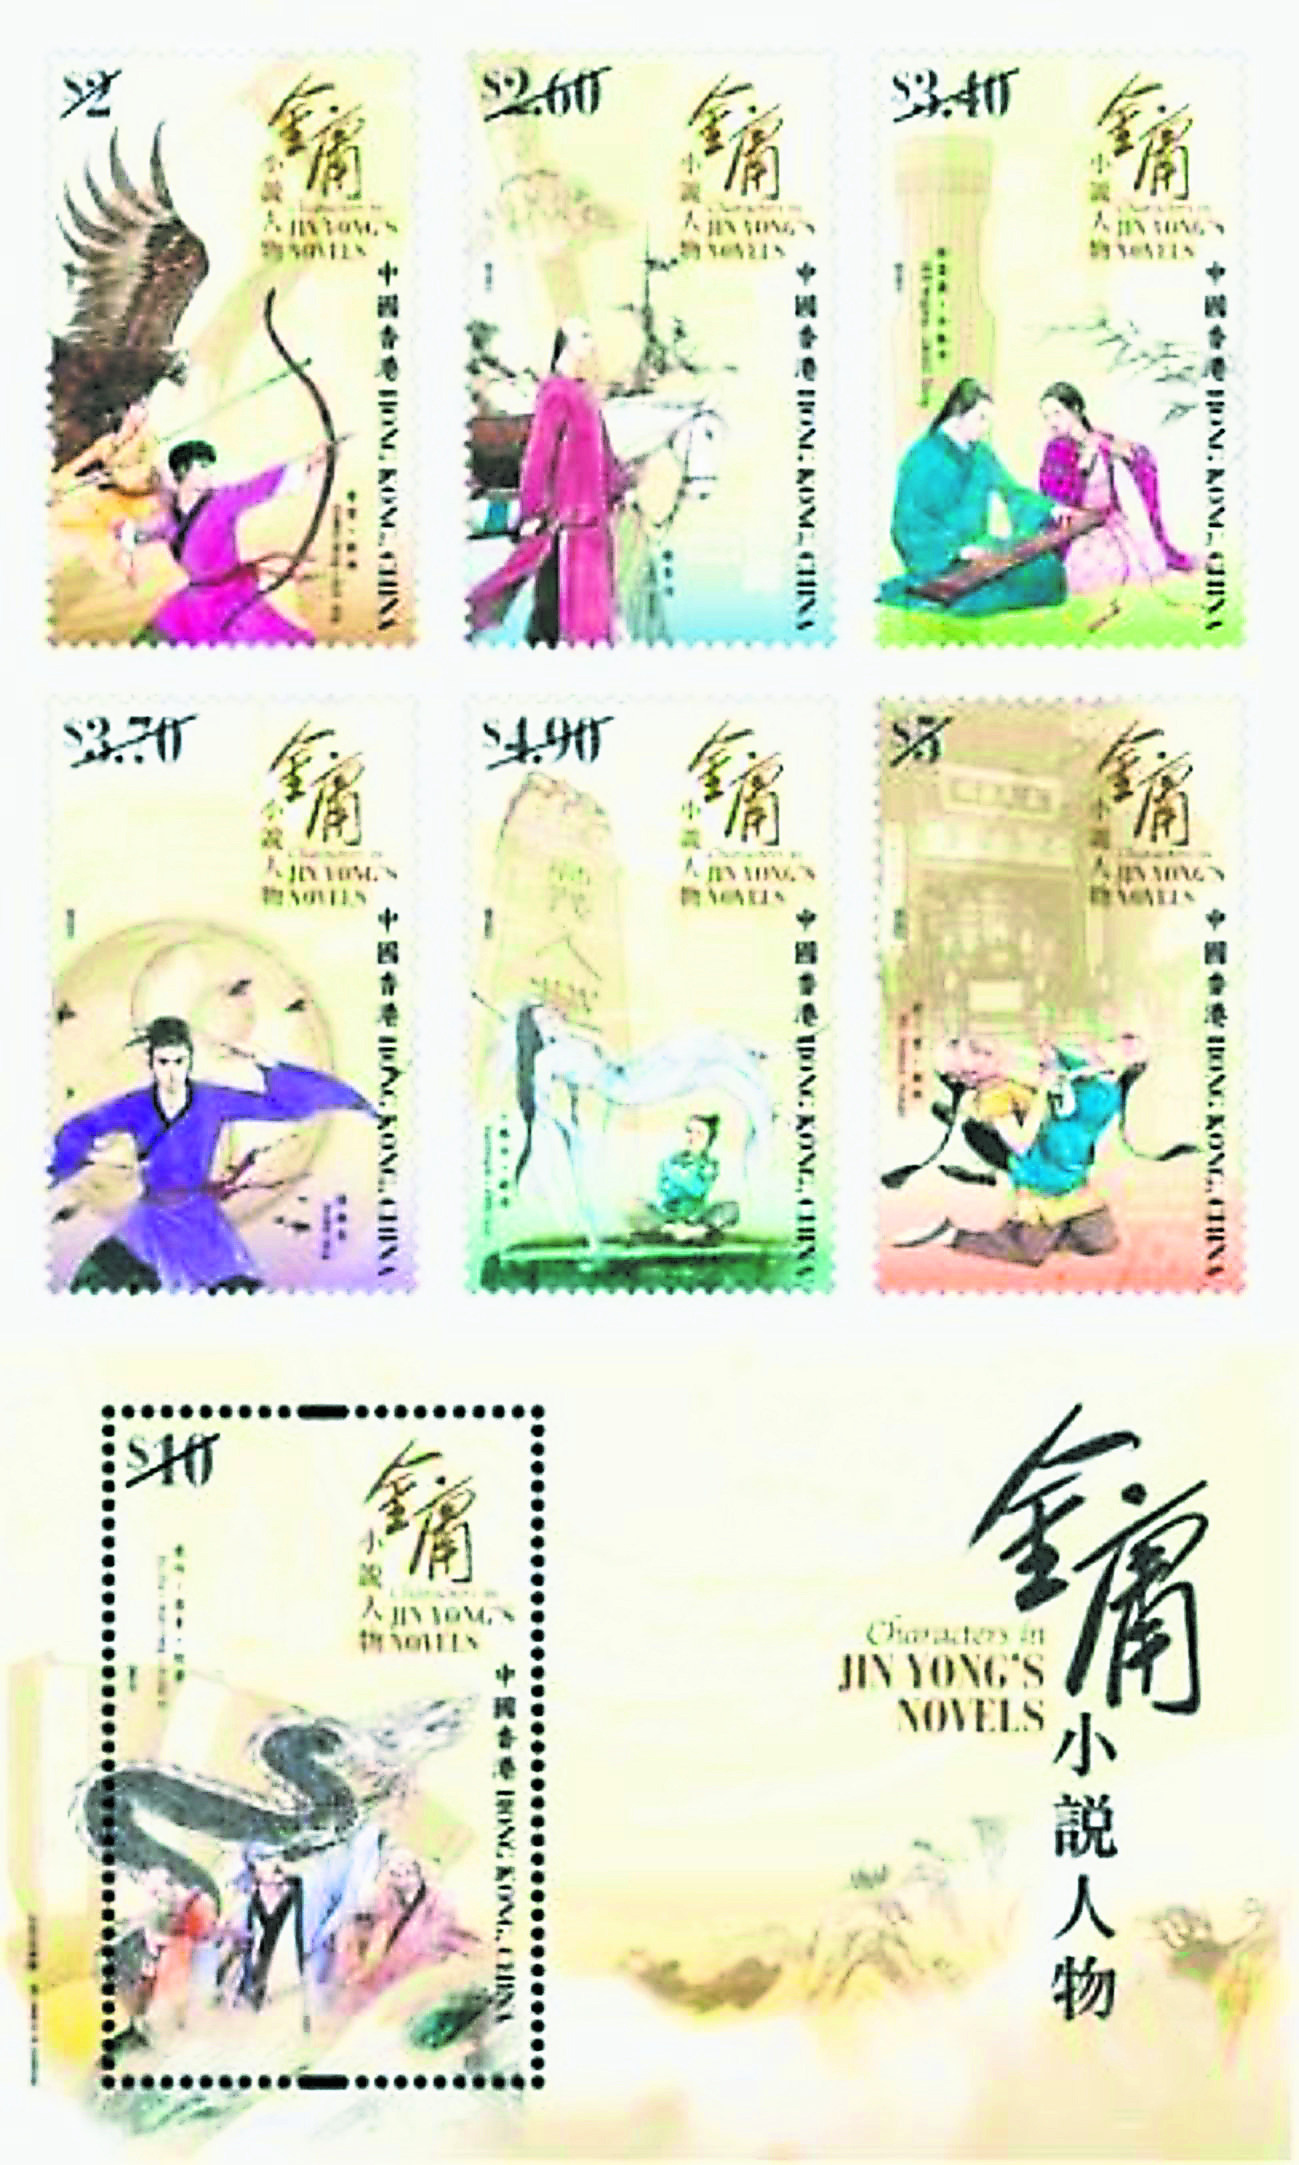 香港邮政将于12月6日推出《金庸小说人物》特别邮票，其中包括一套六枚邮票及一枚邮票小型张。